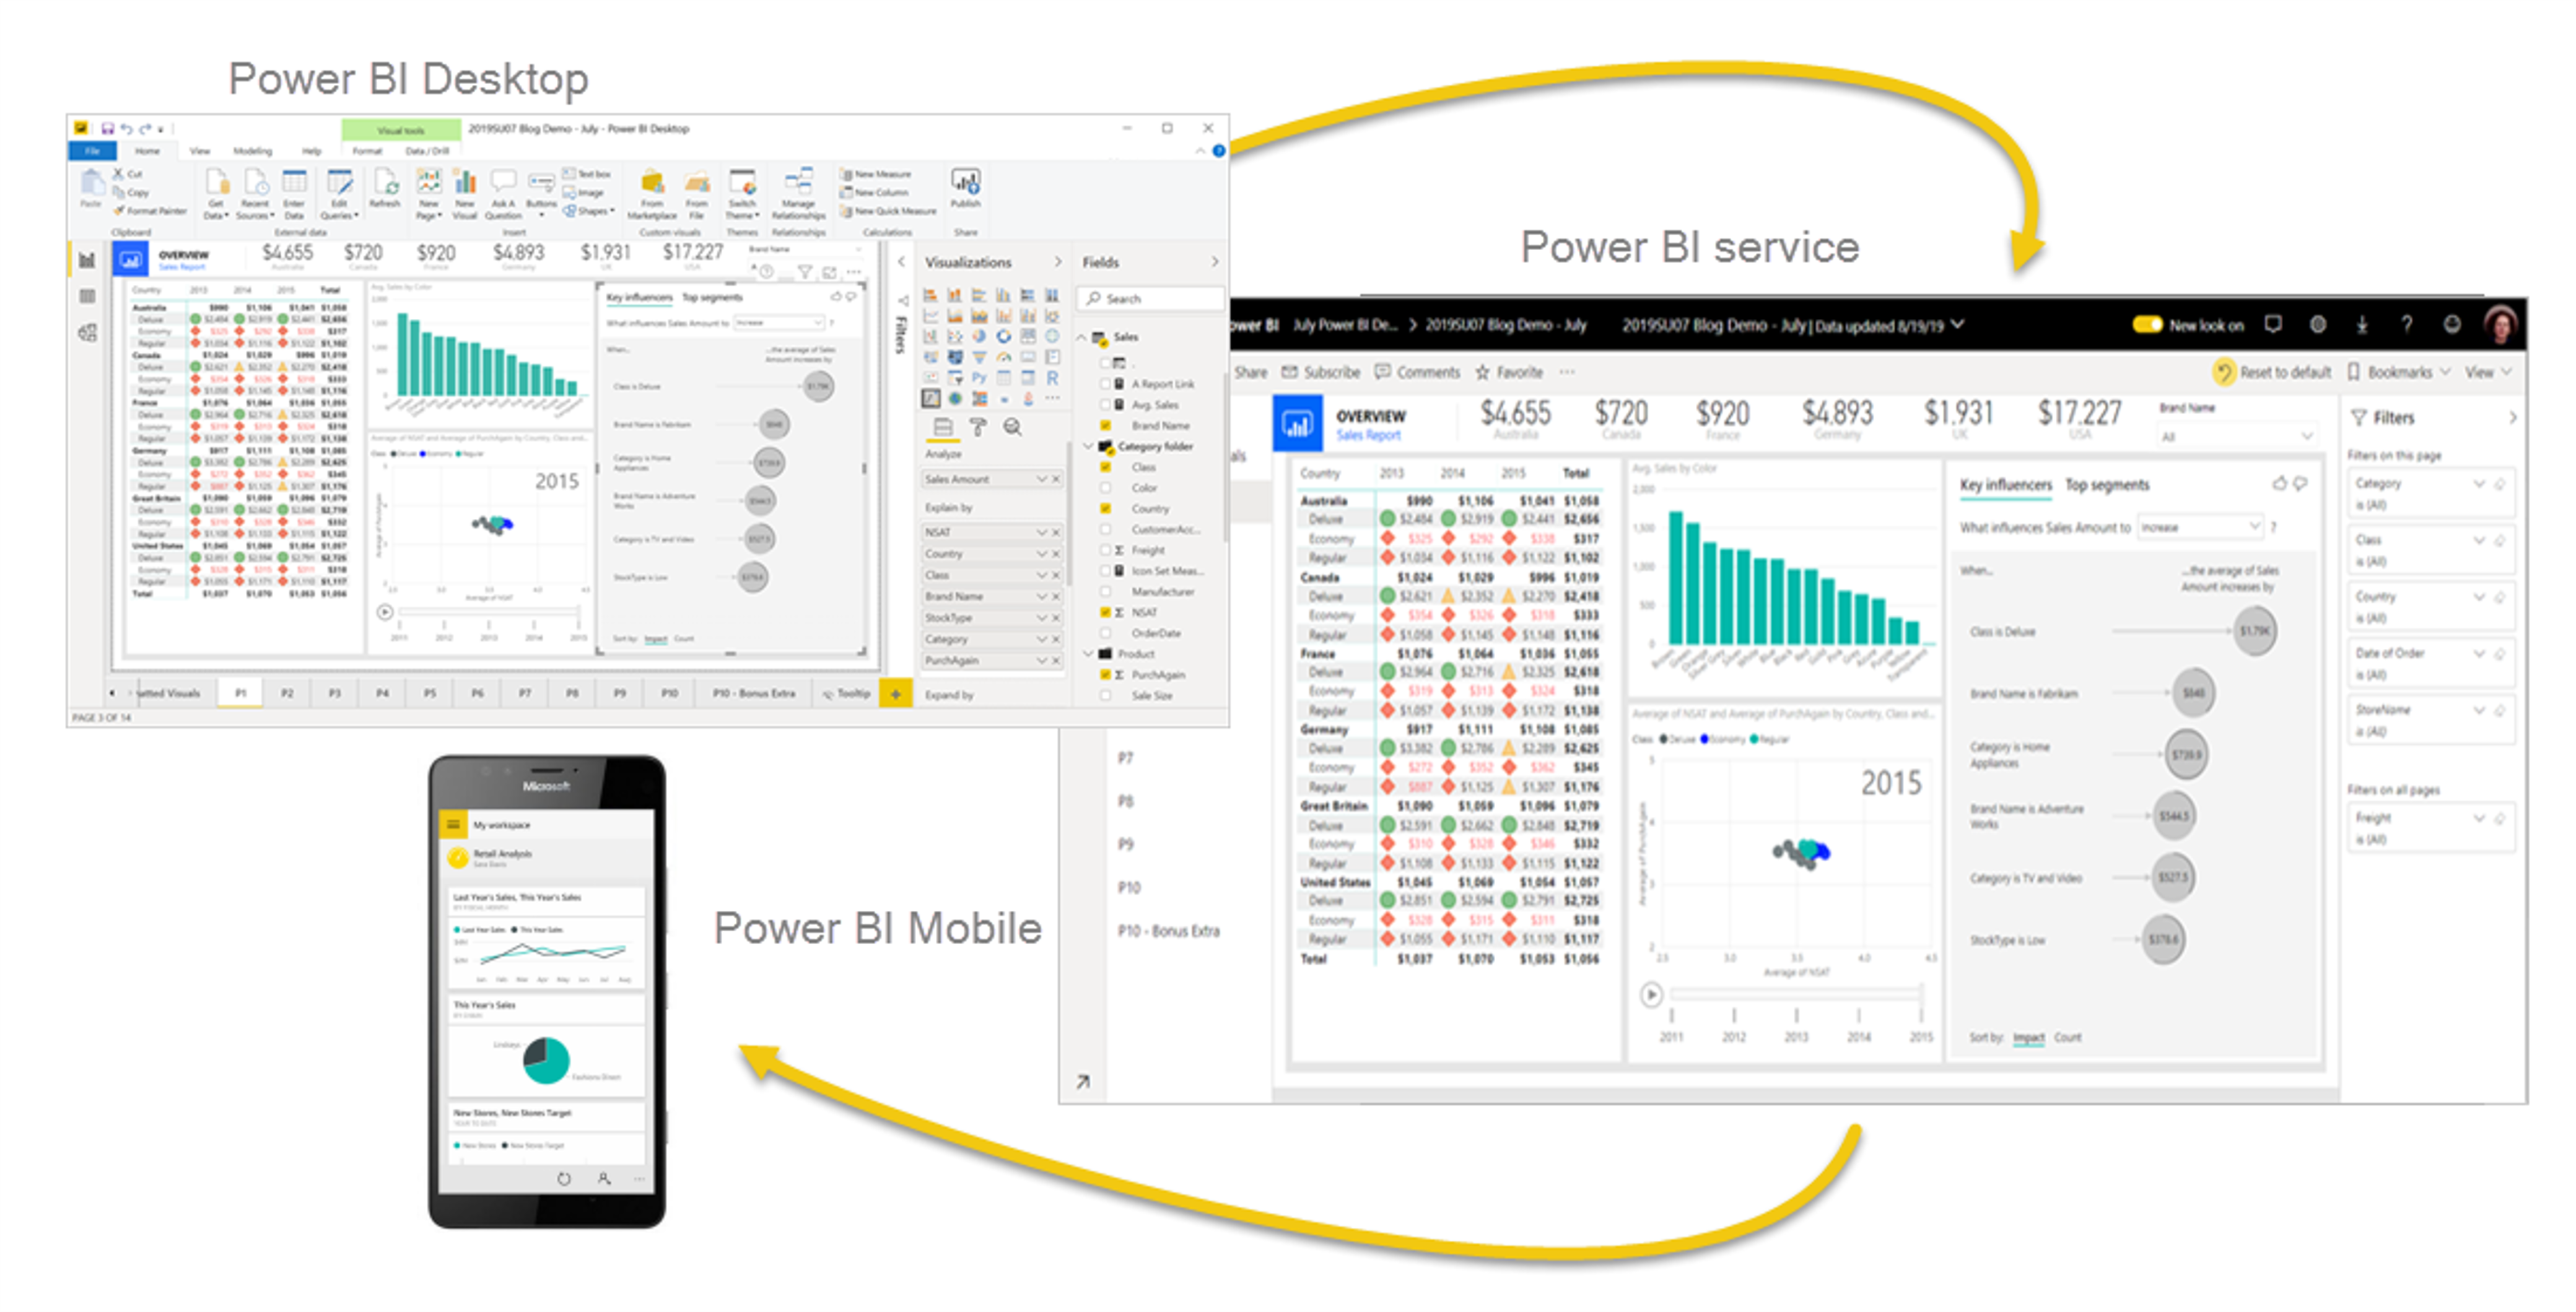 Captura de tela do Power BI Desktop, do serviço Power BI e do Power BI Mobile.